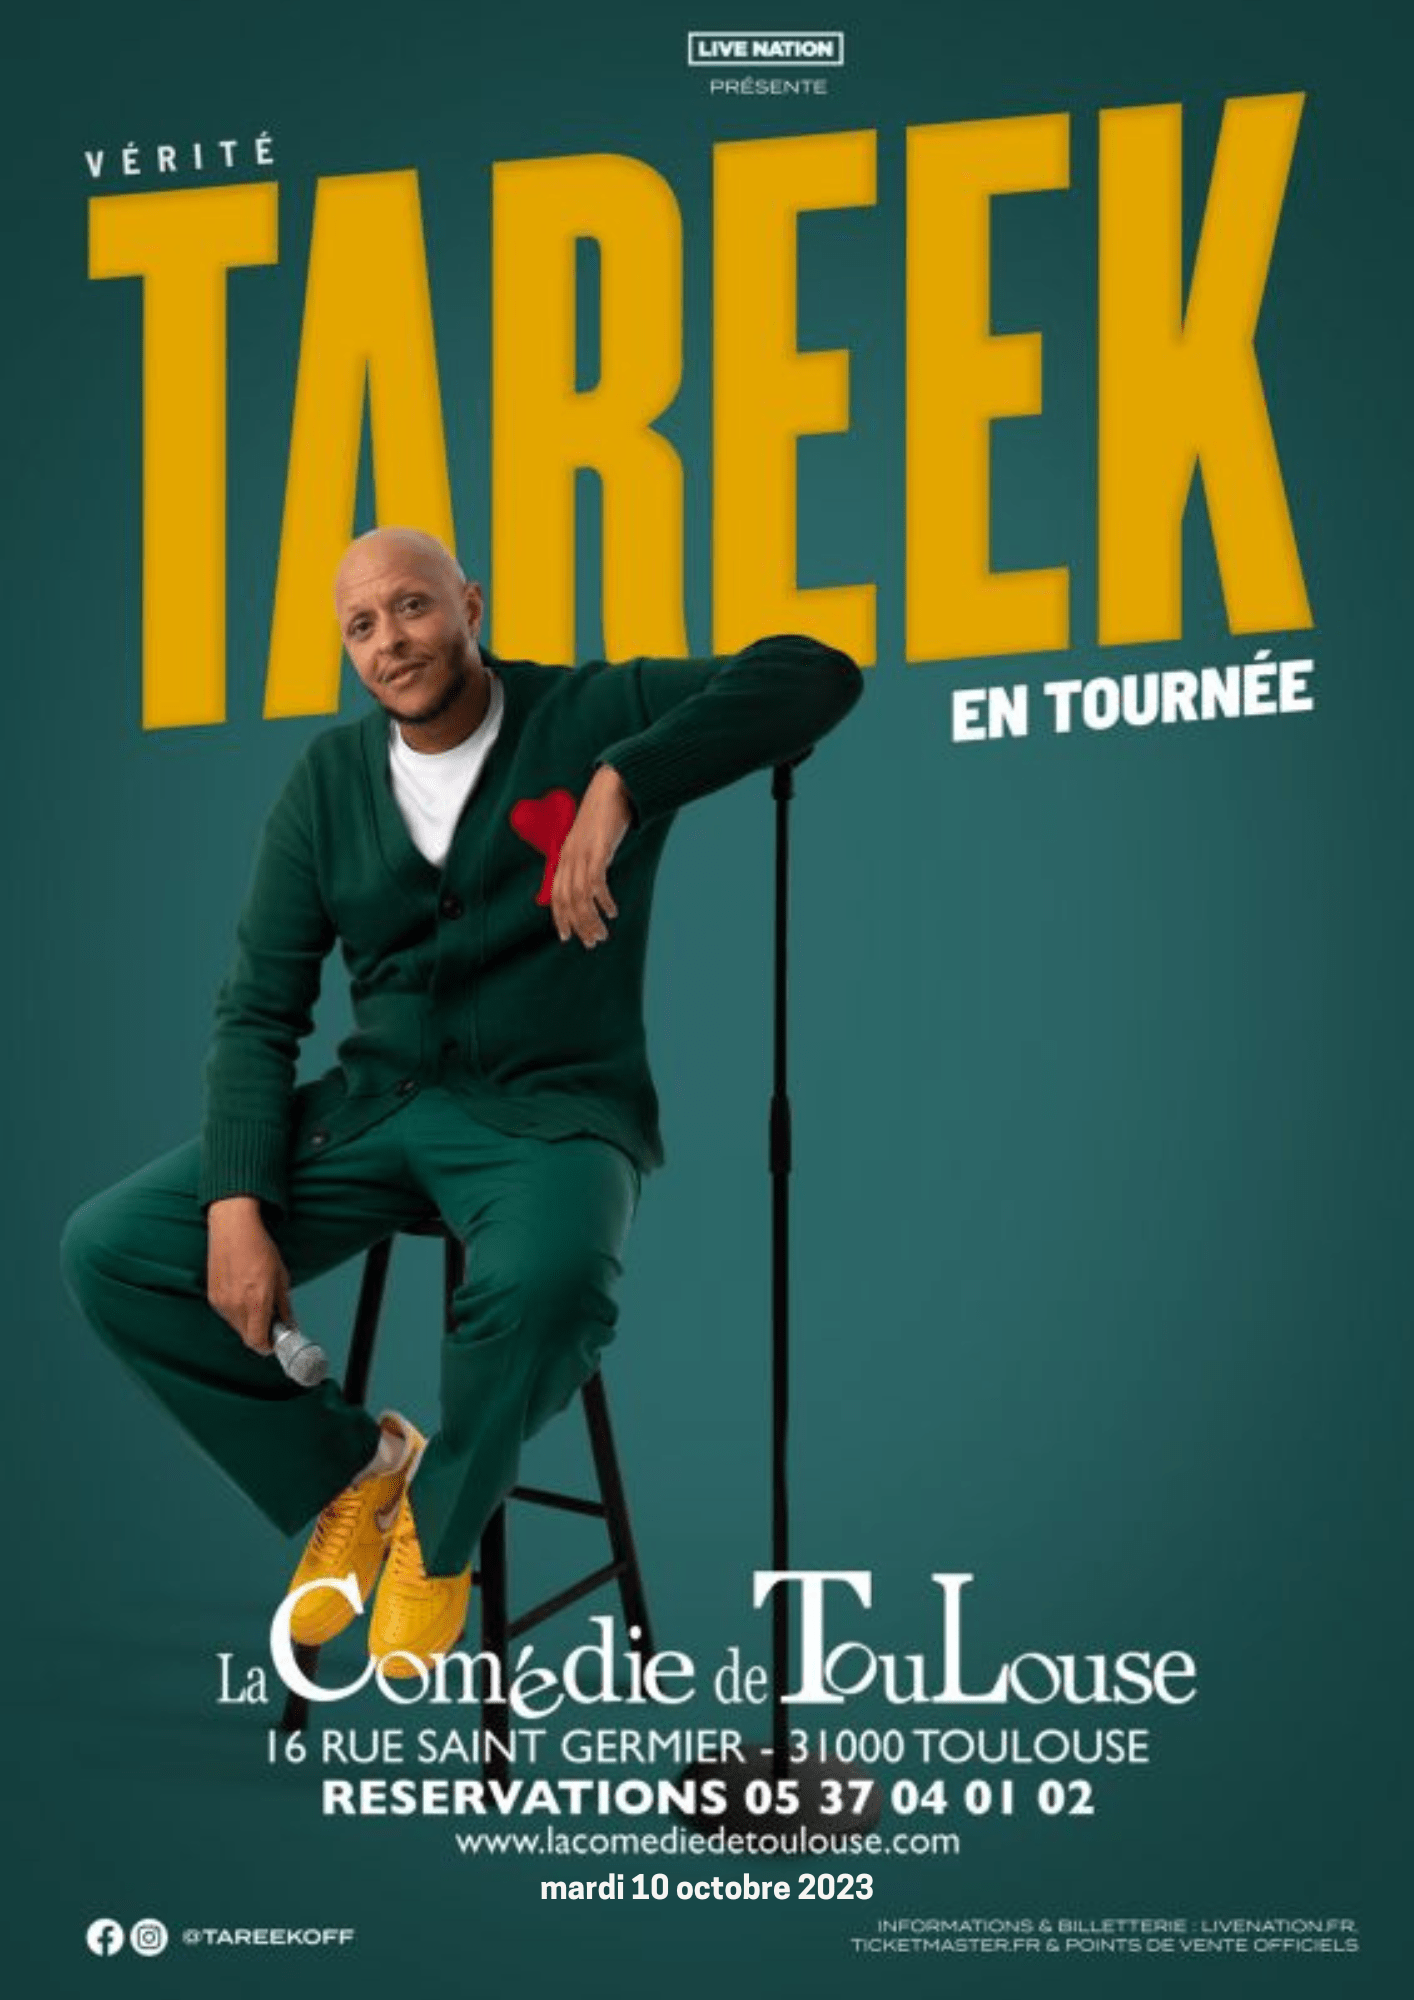 La Comédie de Toulouse - Tareek